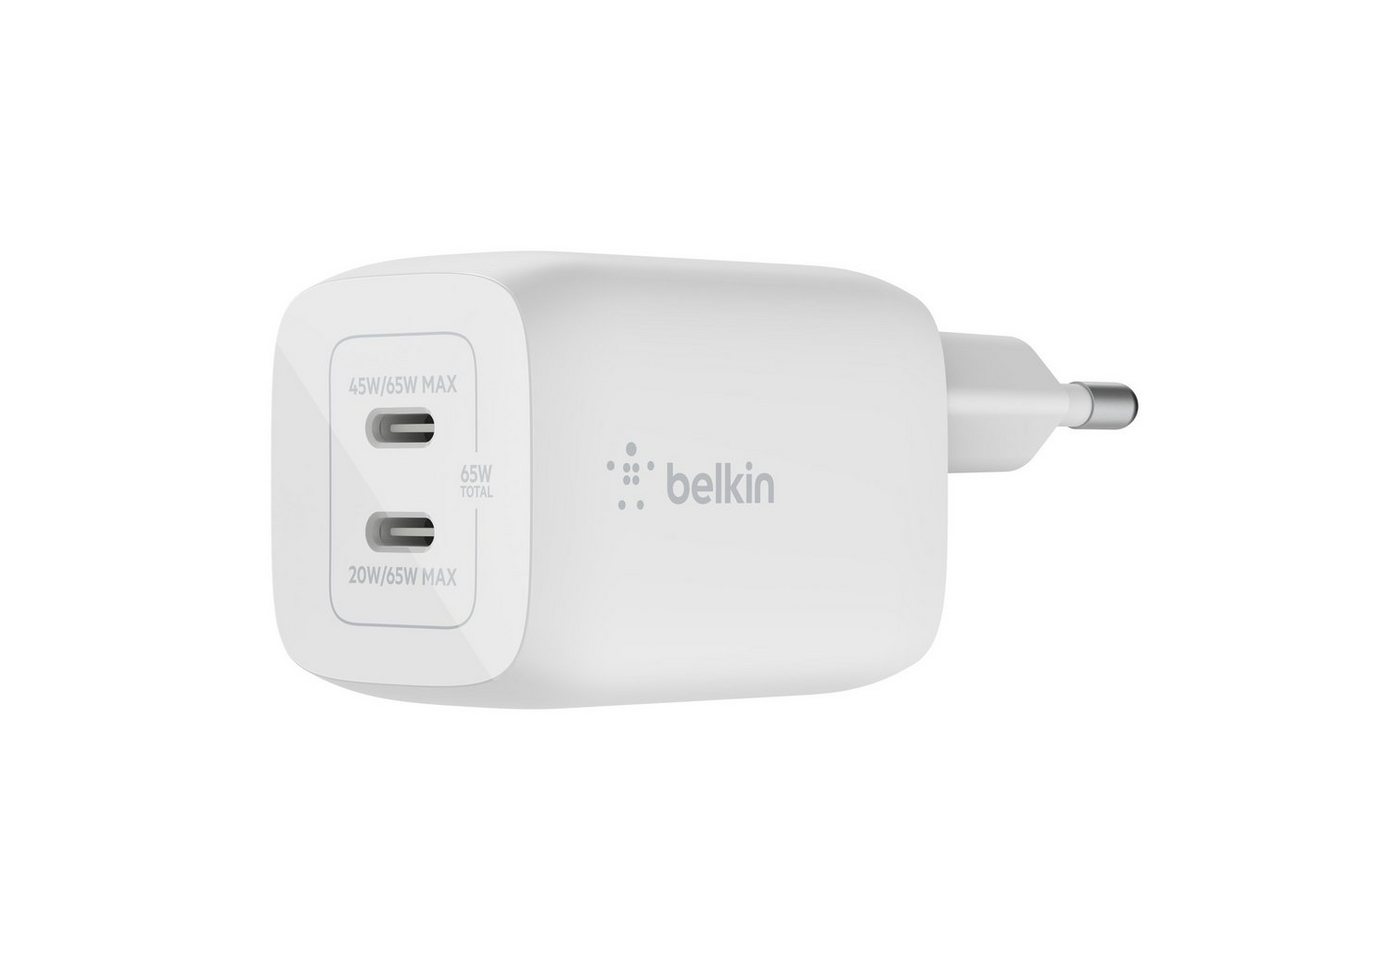 Belkin 65W Dual USB-C GaN Ladegerät mit Power Deliver und PPS USB-Ladegerät (für Apple iPhone Samsung Galaxy Google Pixel) von Belkin